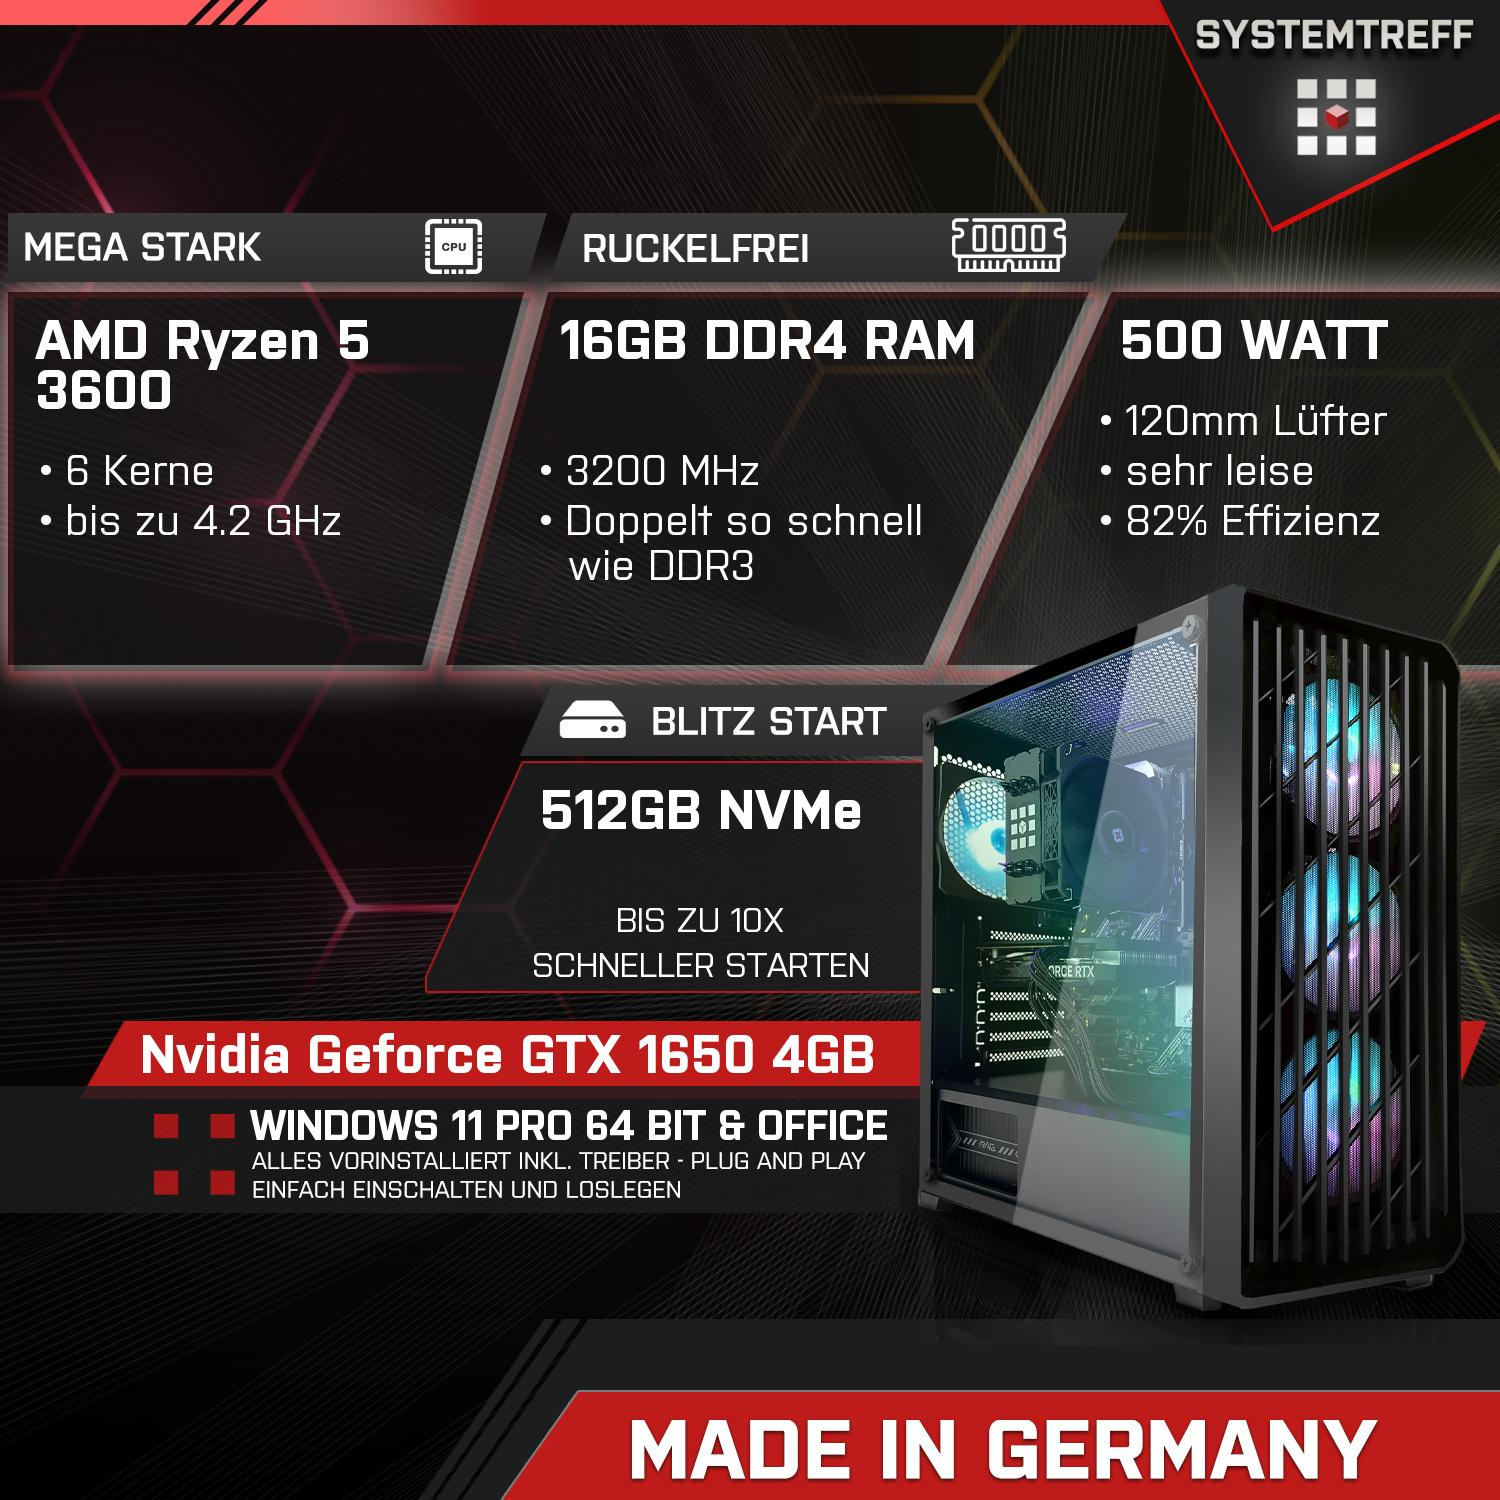 SYSTEMTREFF Gaming Komplett AMD PC GTX GB, Ryzen GB GB 16 3600, 512 5 Geforce 3600 4 mSSD, RAM, GB Prozessor, 4 Komplett Nvidia mit 1650